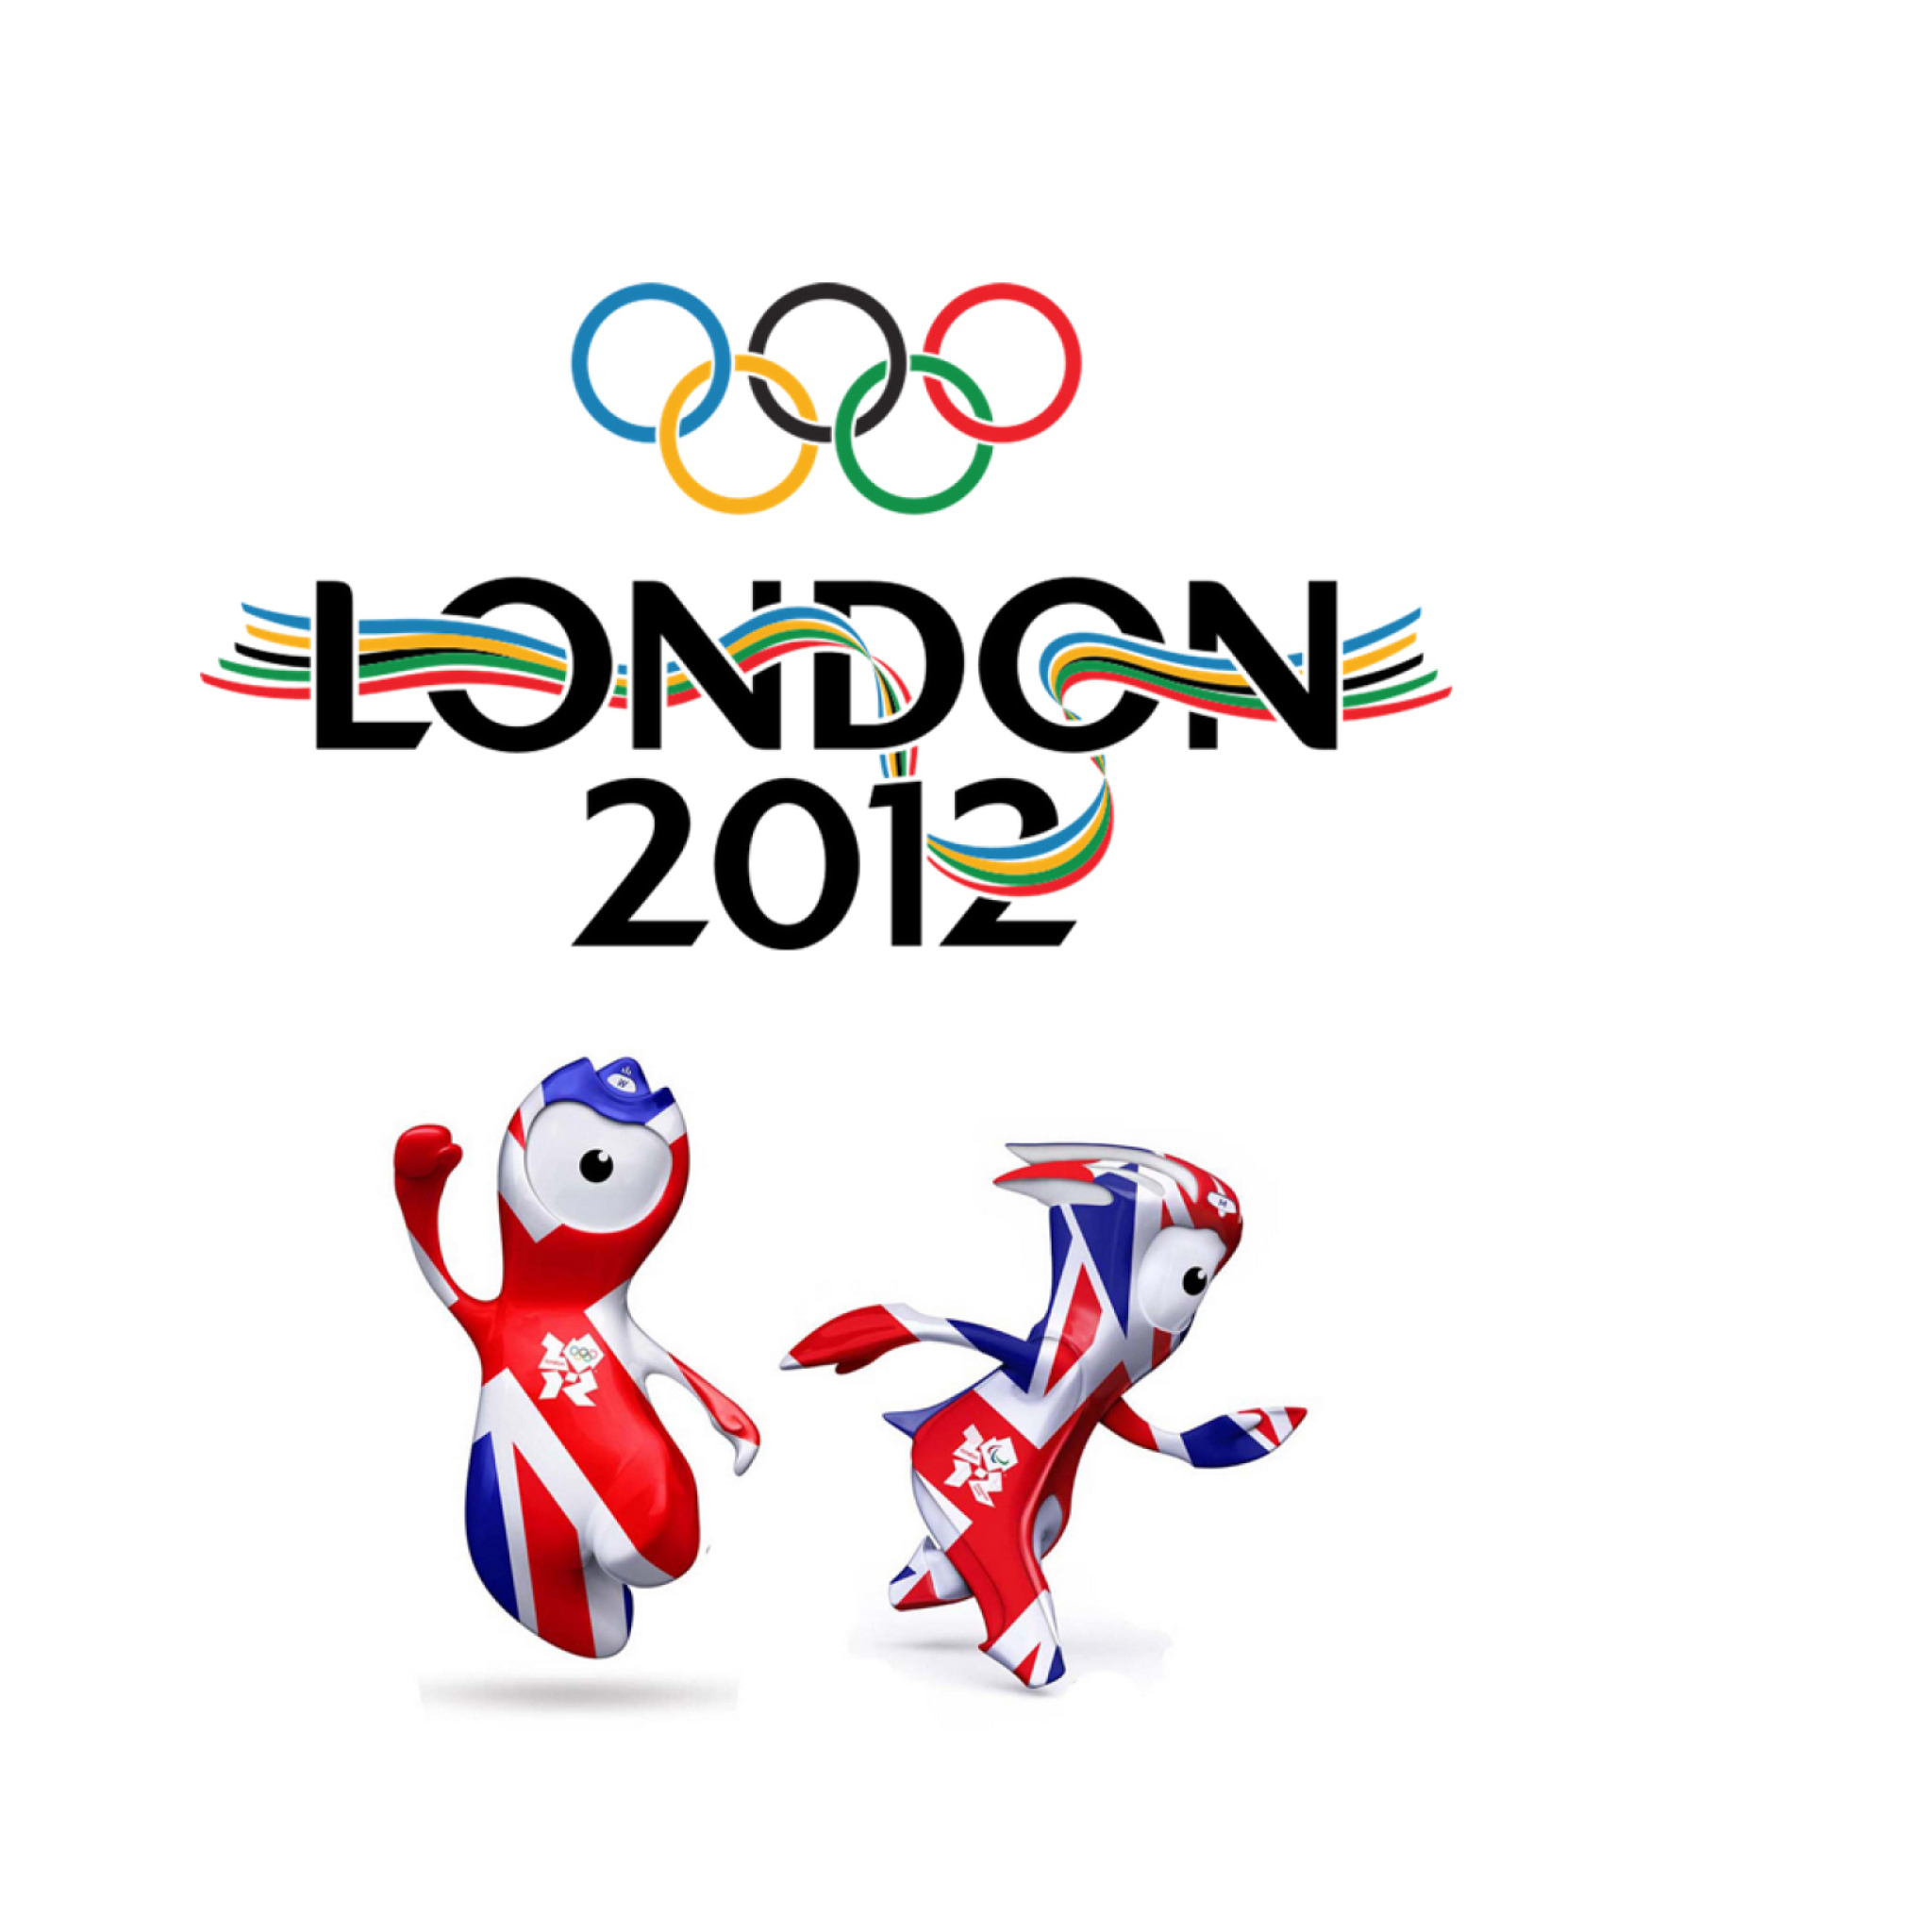 Ои 2012. Олимпийские игры в Лондоне 2012. Символ Олимпийских игр в Лондоне 2012. Олимпийский символ Лондон 2012.